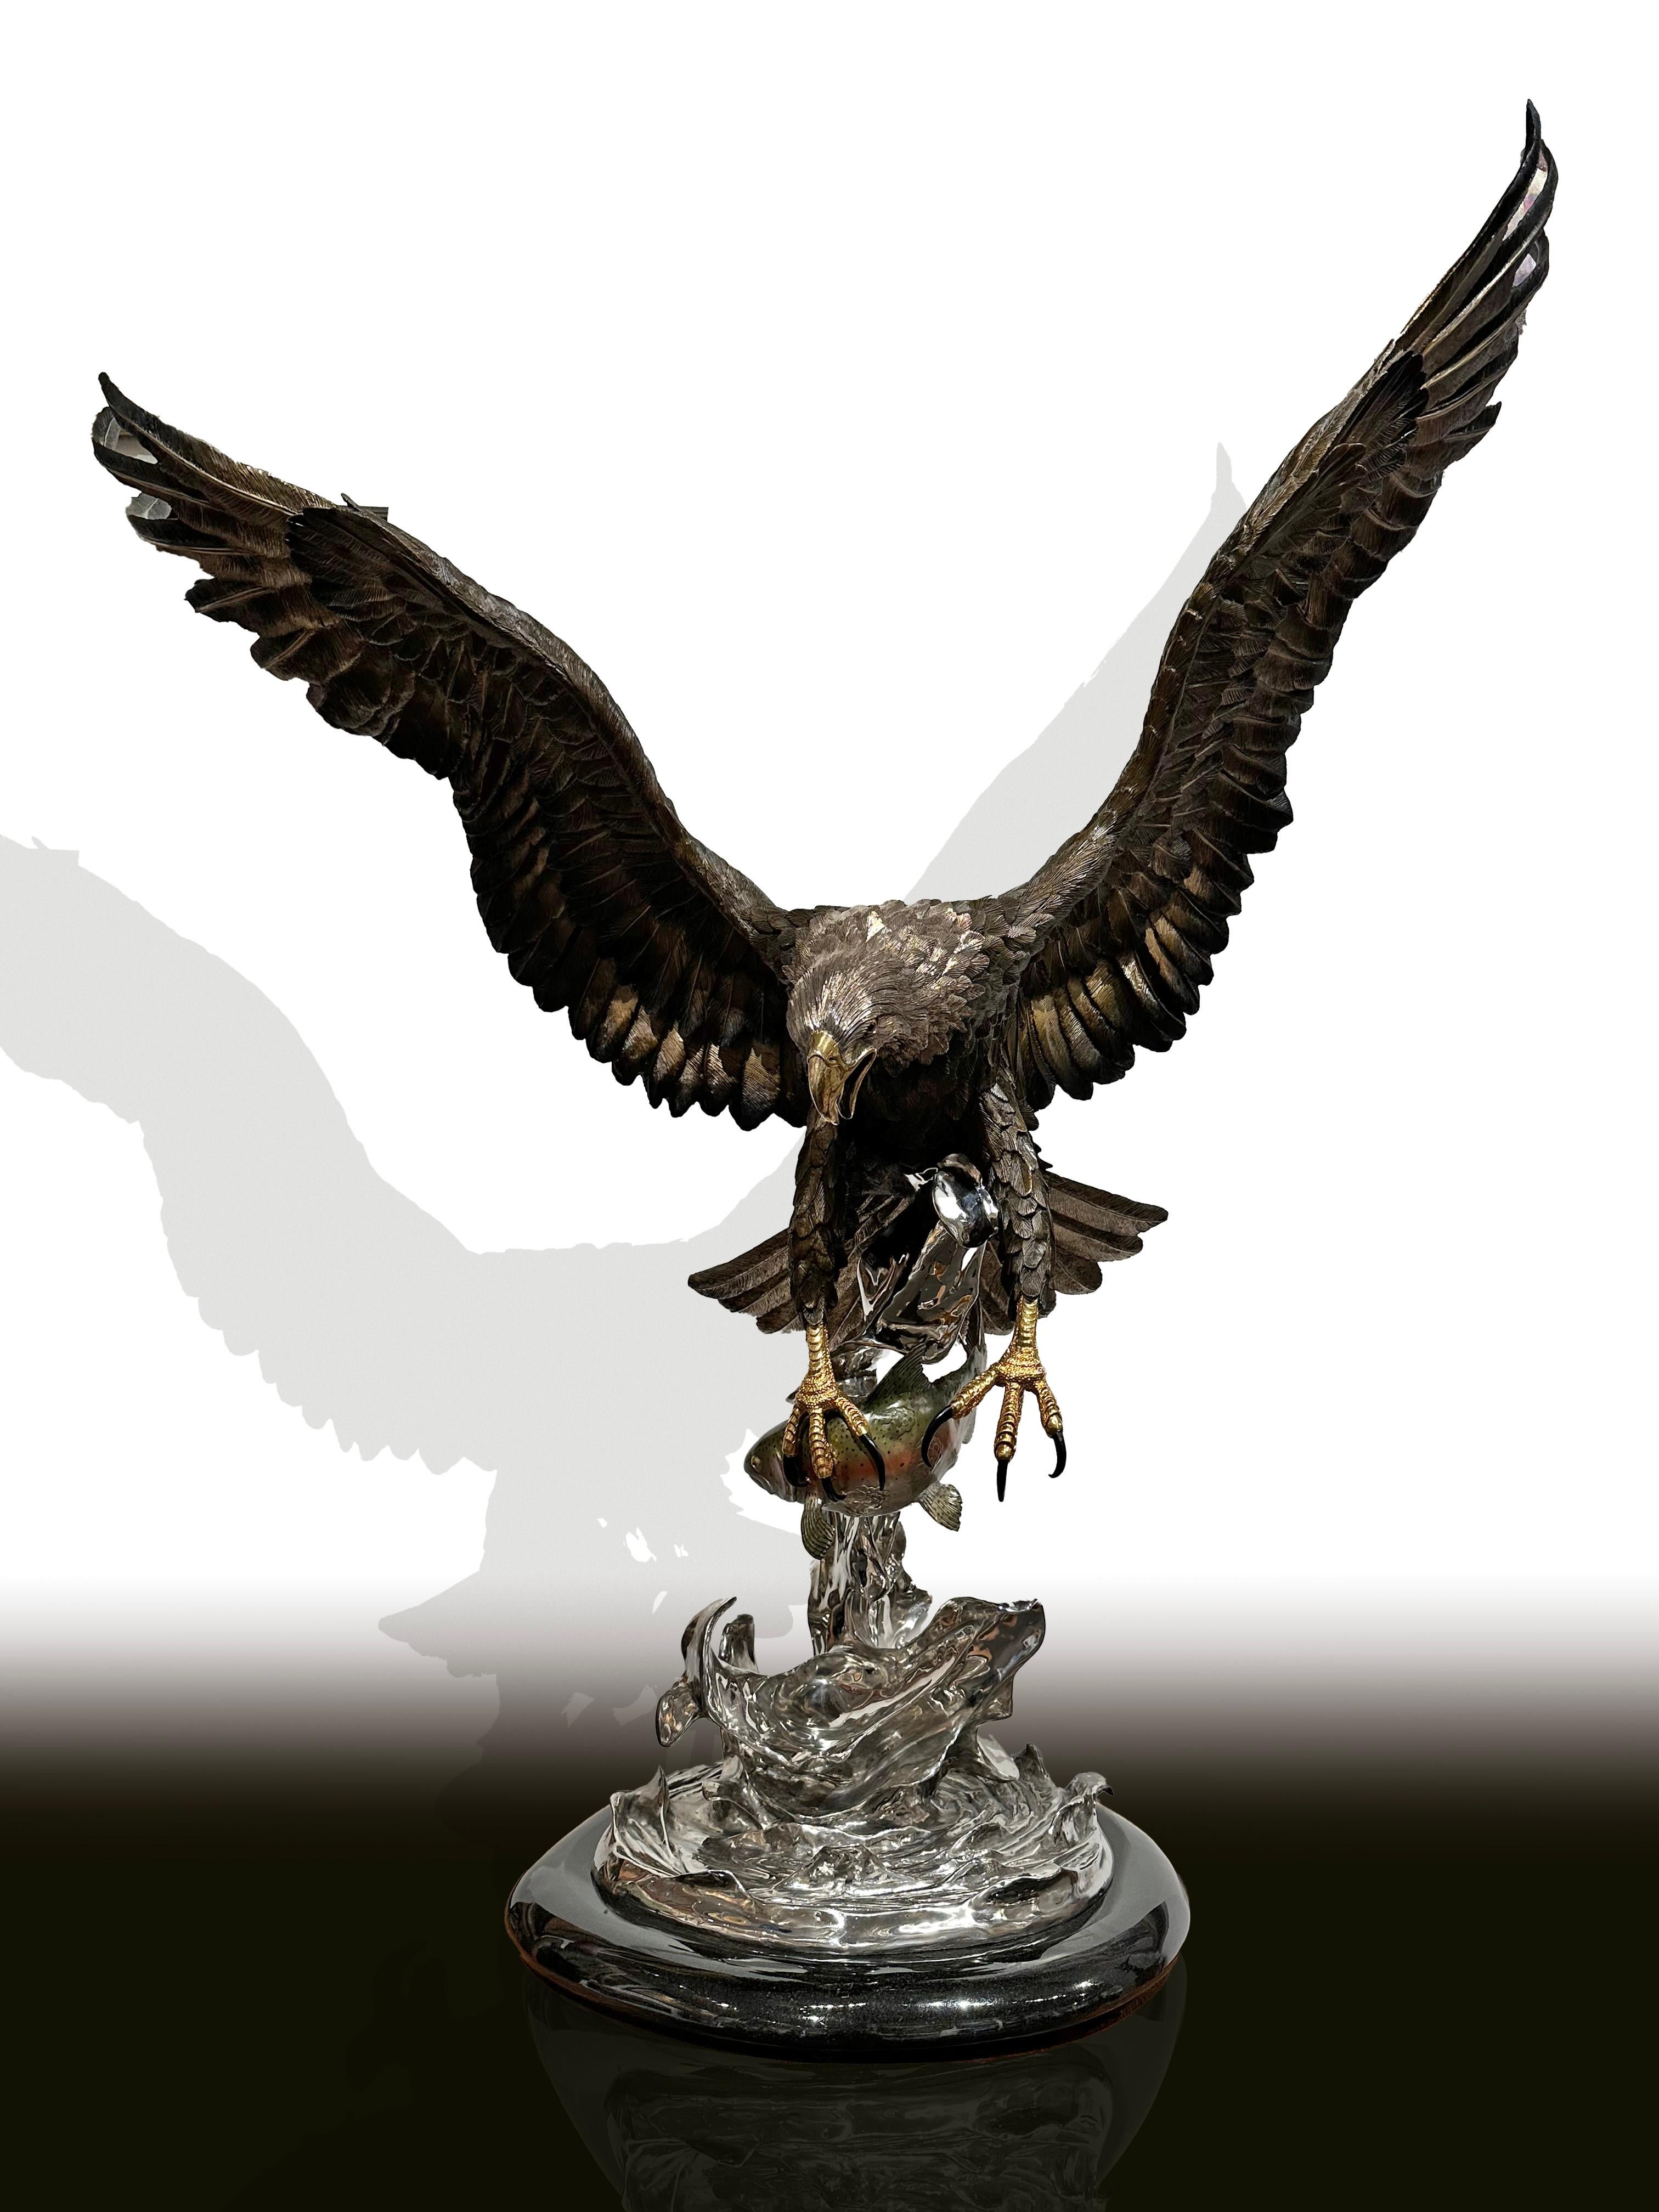 On the Wings of an Eagle" von Chester Fields ist eine seiner beliebtesten Skulpturen. Dies ist die Nummer 26 von 75 hergestellten. Es besteht aus folgenden Bestandteilen:
Bronze-Guss
Luxus-Patina
Goldschnabel, -füße und -augen
Schwarze